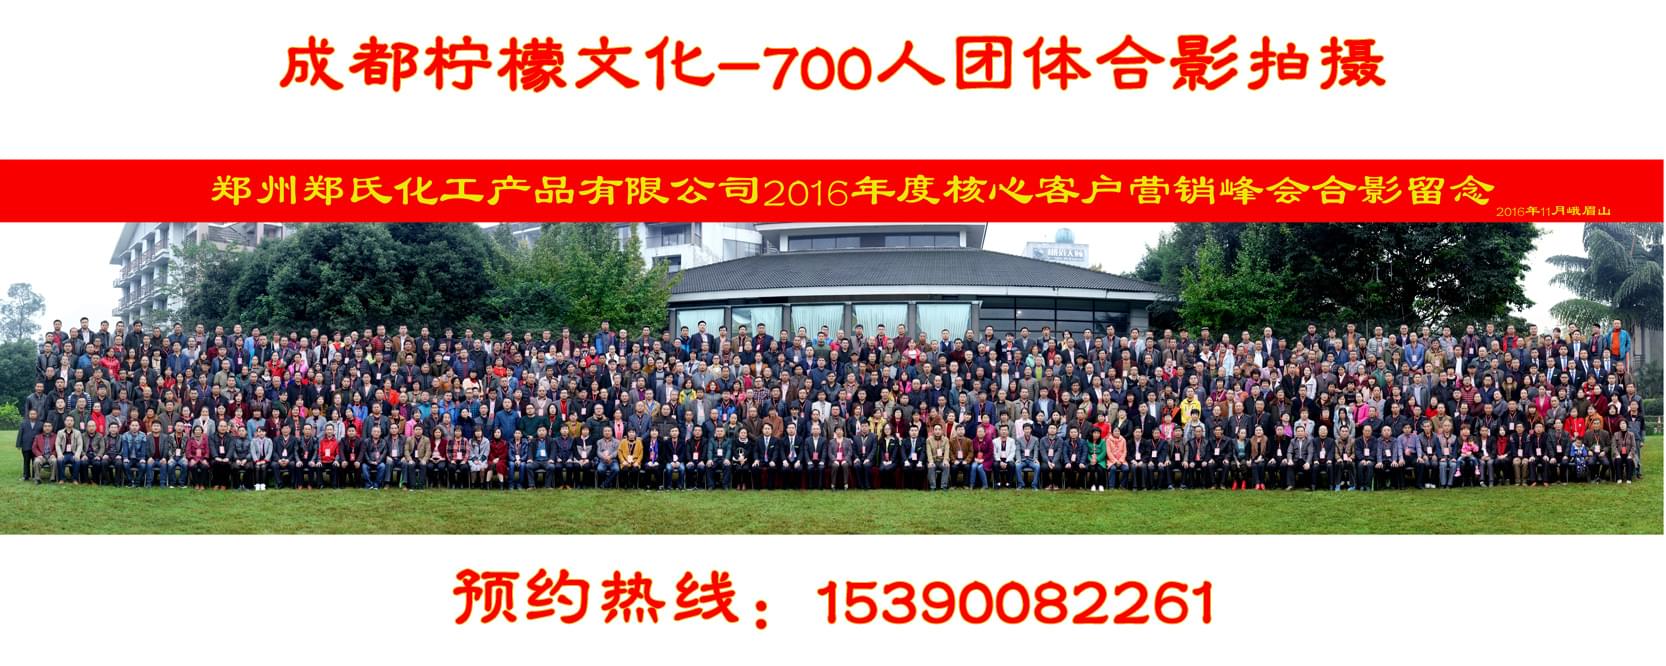 郑州郑氏化工产品有限公司核心客户营销峰会700人会议合影拍摄